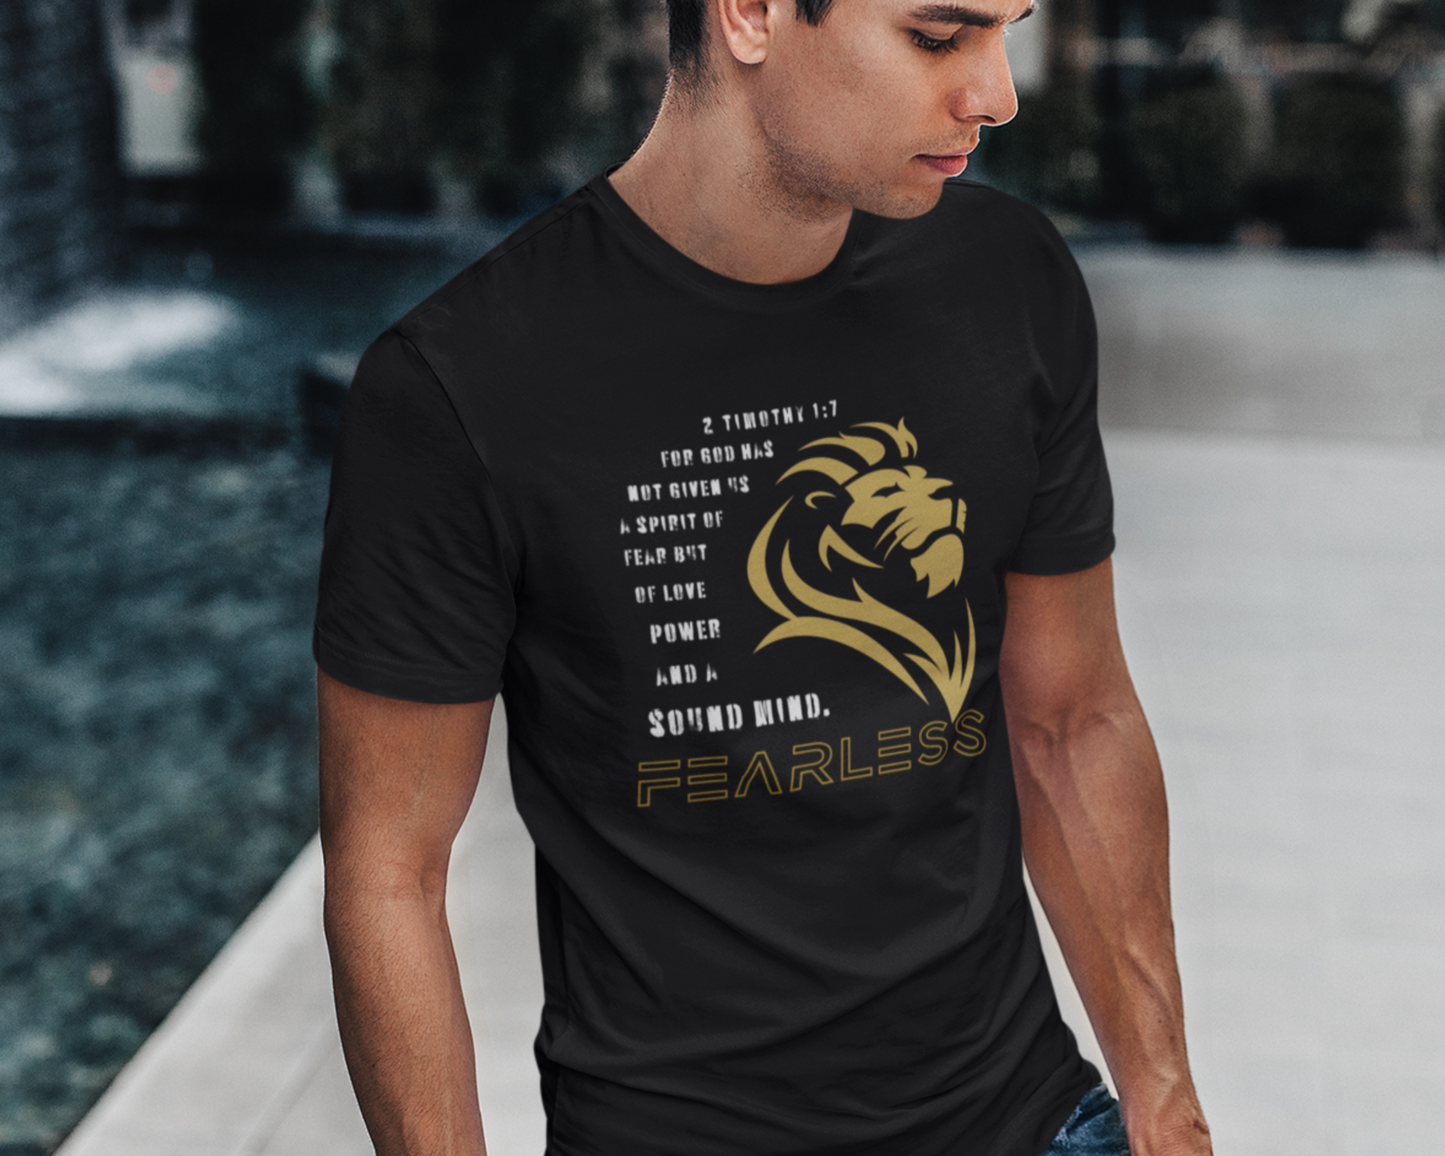 Fearless T-Shirt for men